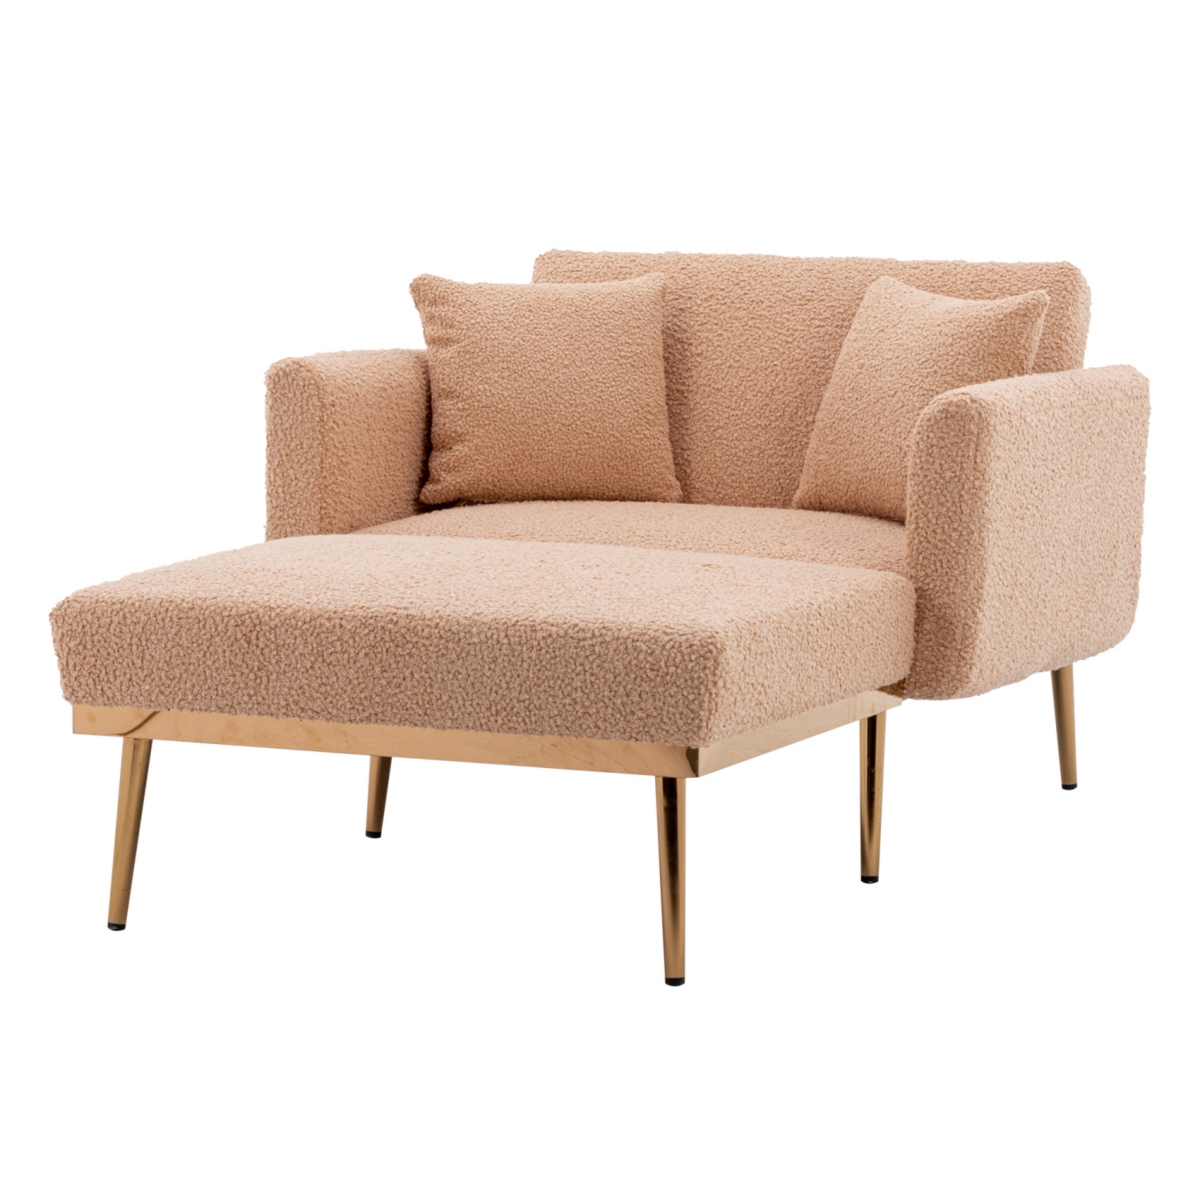 Simplie Fun Chaise Lounge Chair /accent Chair In Brown